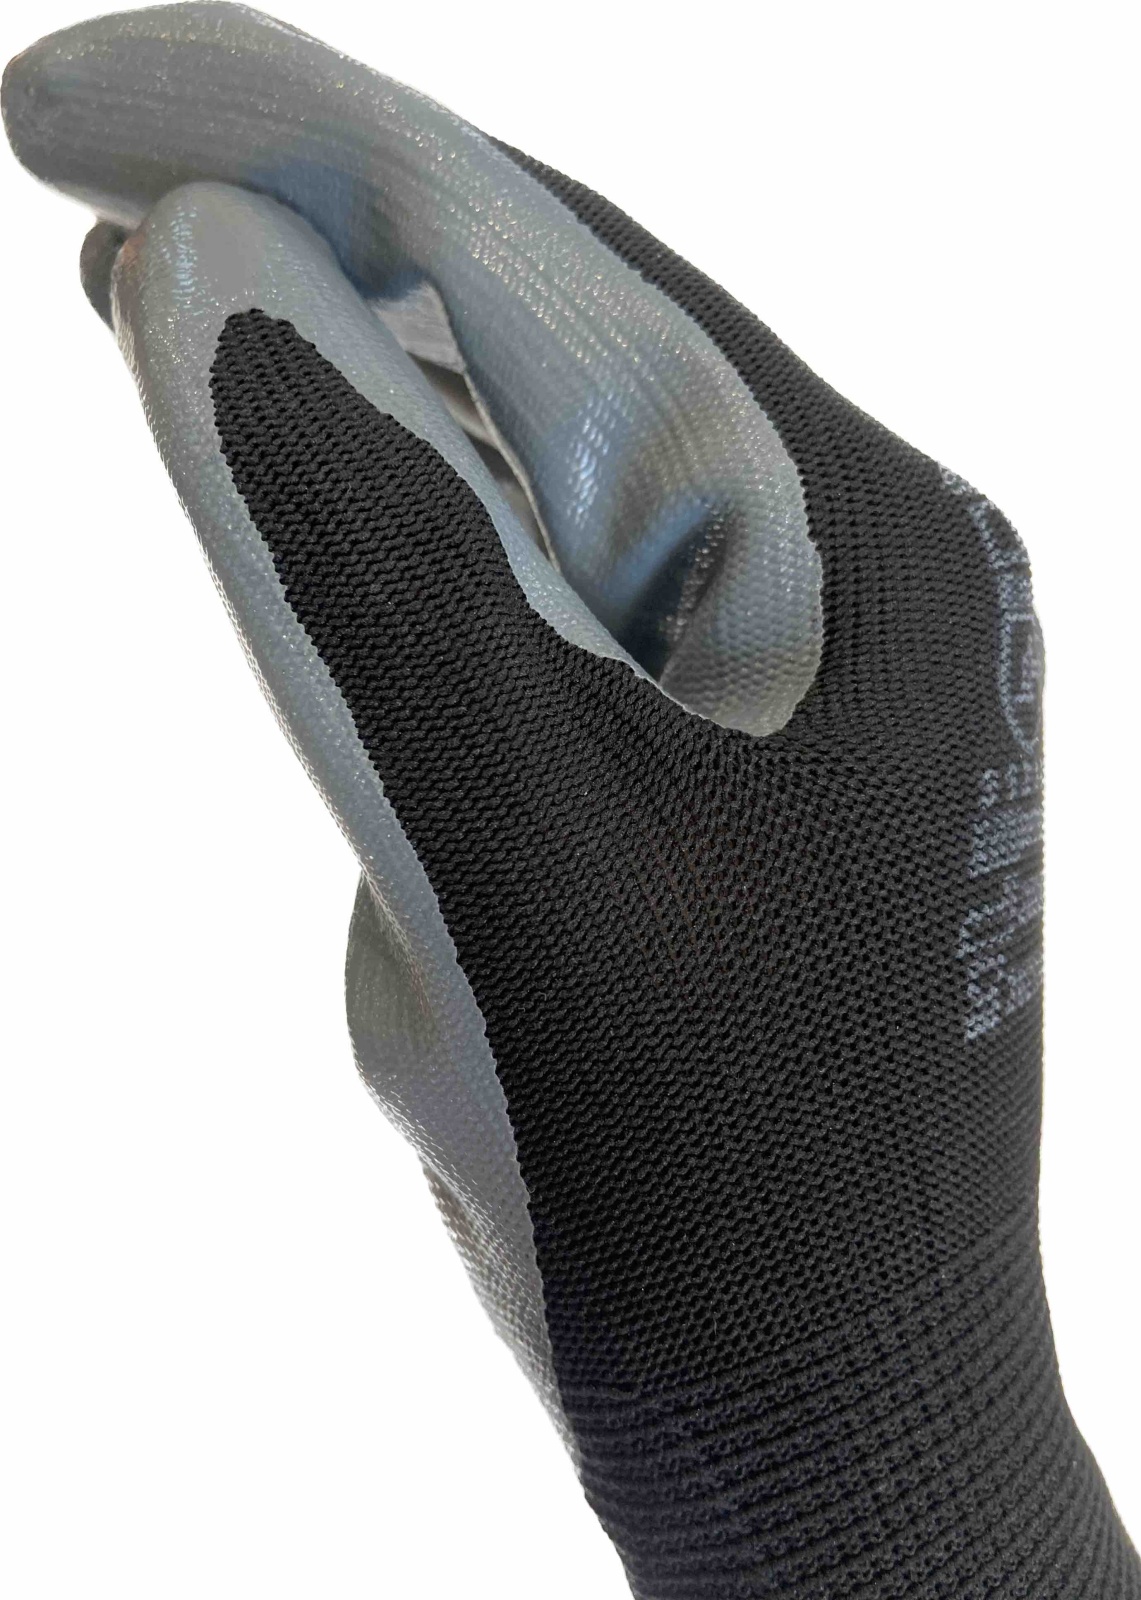 Перчатки полиэтеровые с нитриловым обливом, манжет резинка, VE712GR 